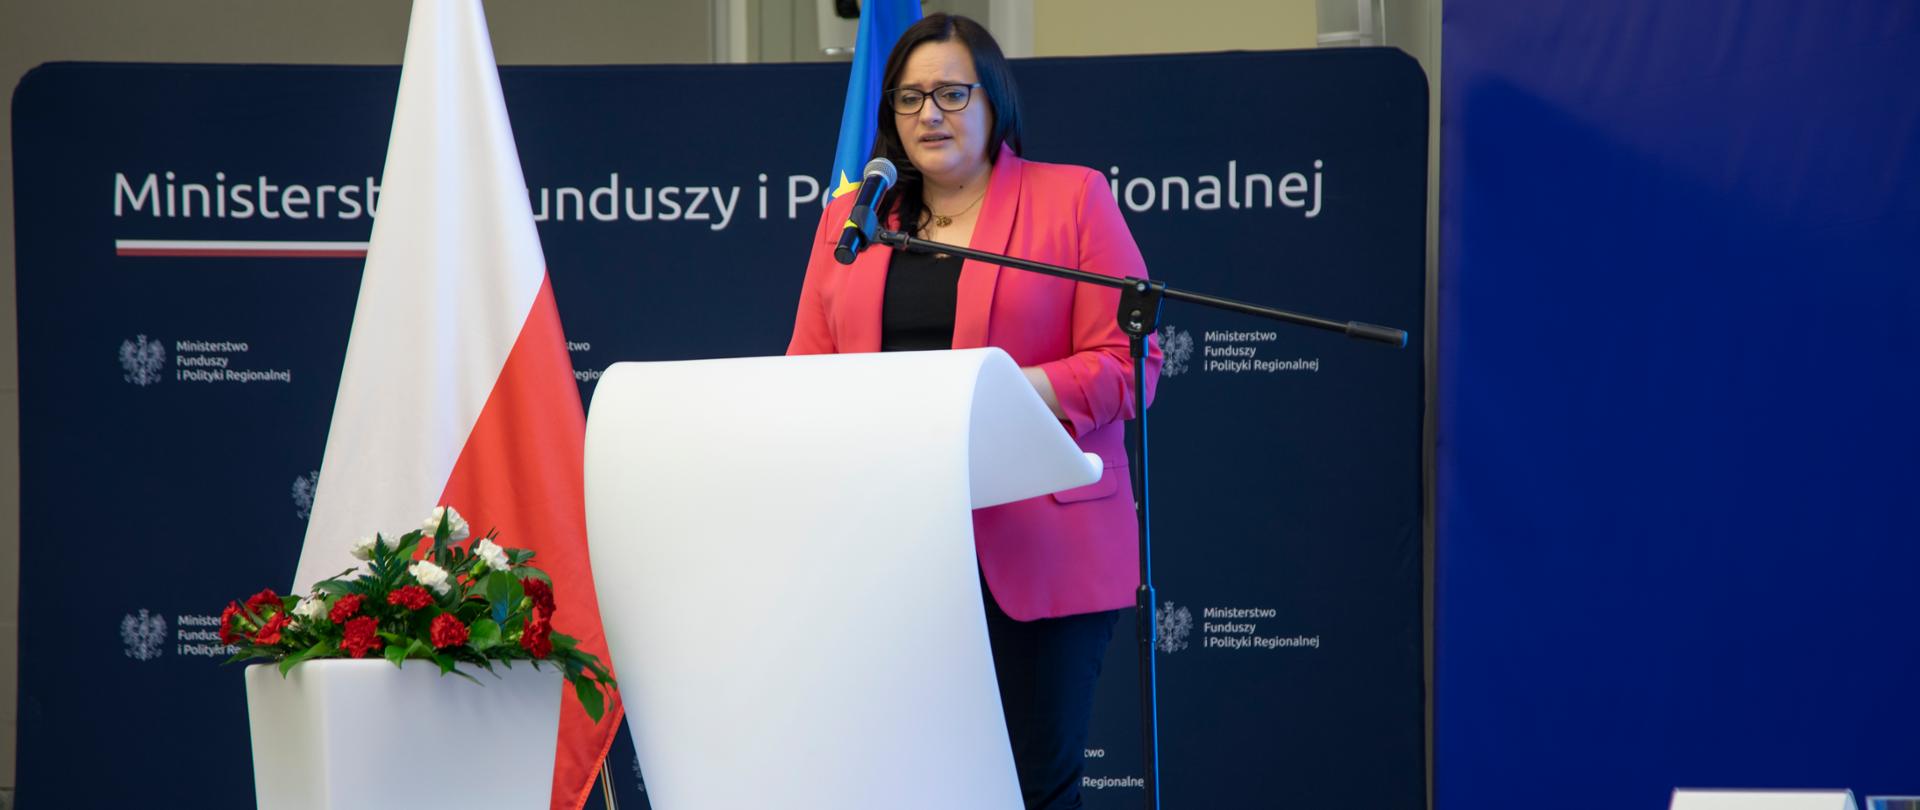 Na zdjęciu stoi przy mównicy wiceminister Małgorzata Jarosińska-Jedynak, w tle flagi Polski i Unii Europejskiej oraz granatowy baner z napisem Ministerstwo Funduszy i Polityki Regionalnej.